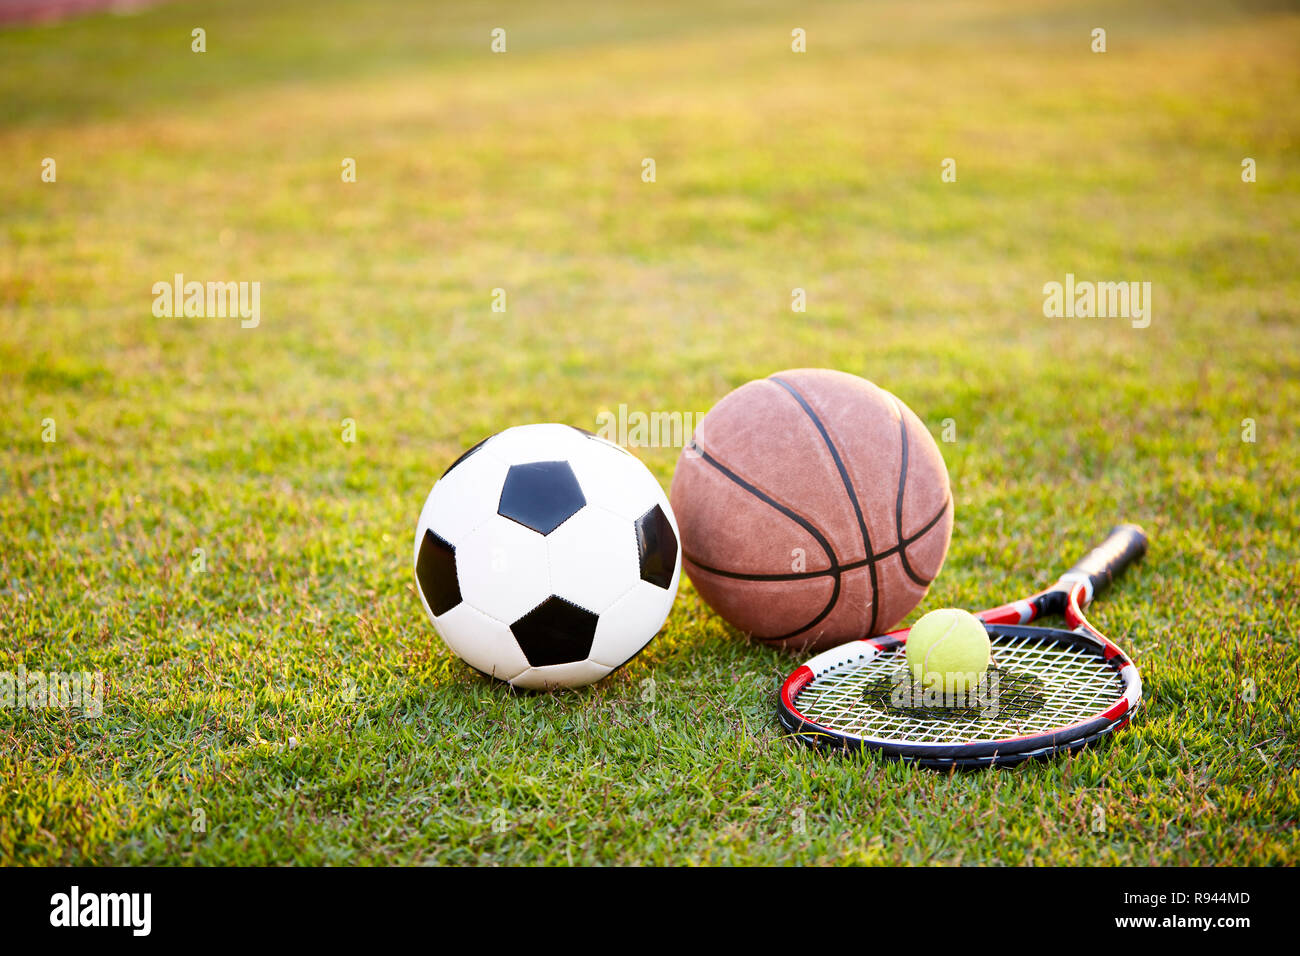 Ballon de soccer de football basket-ball tennis racket portées sur l'herbe au coucher du soleil Banque D'Images